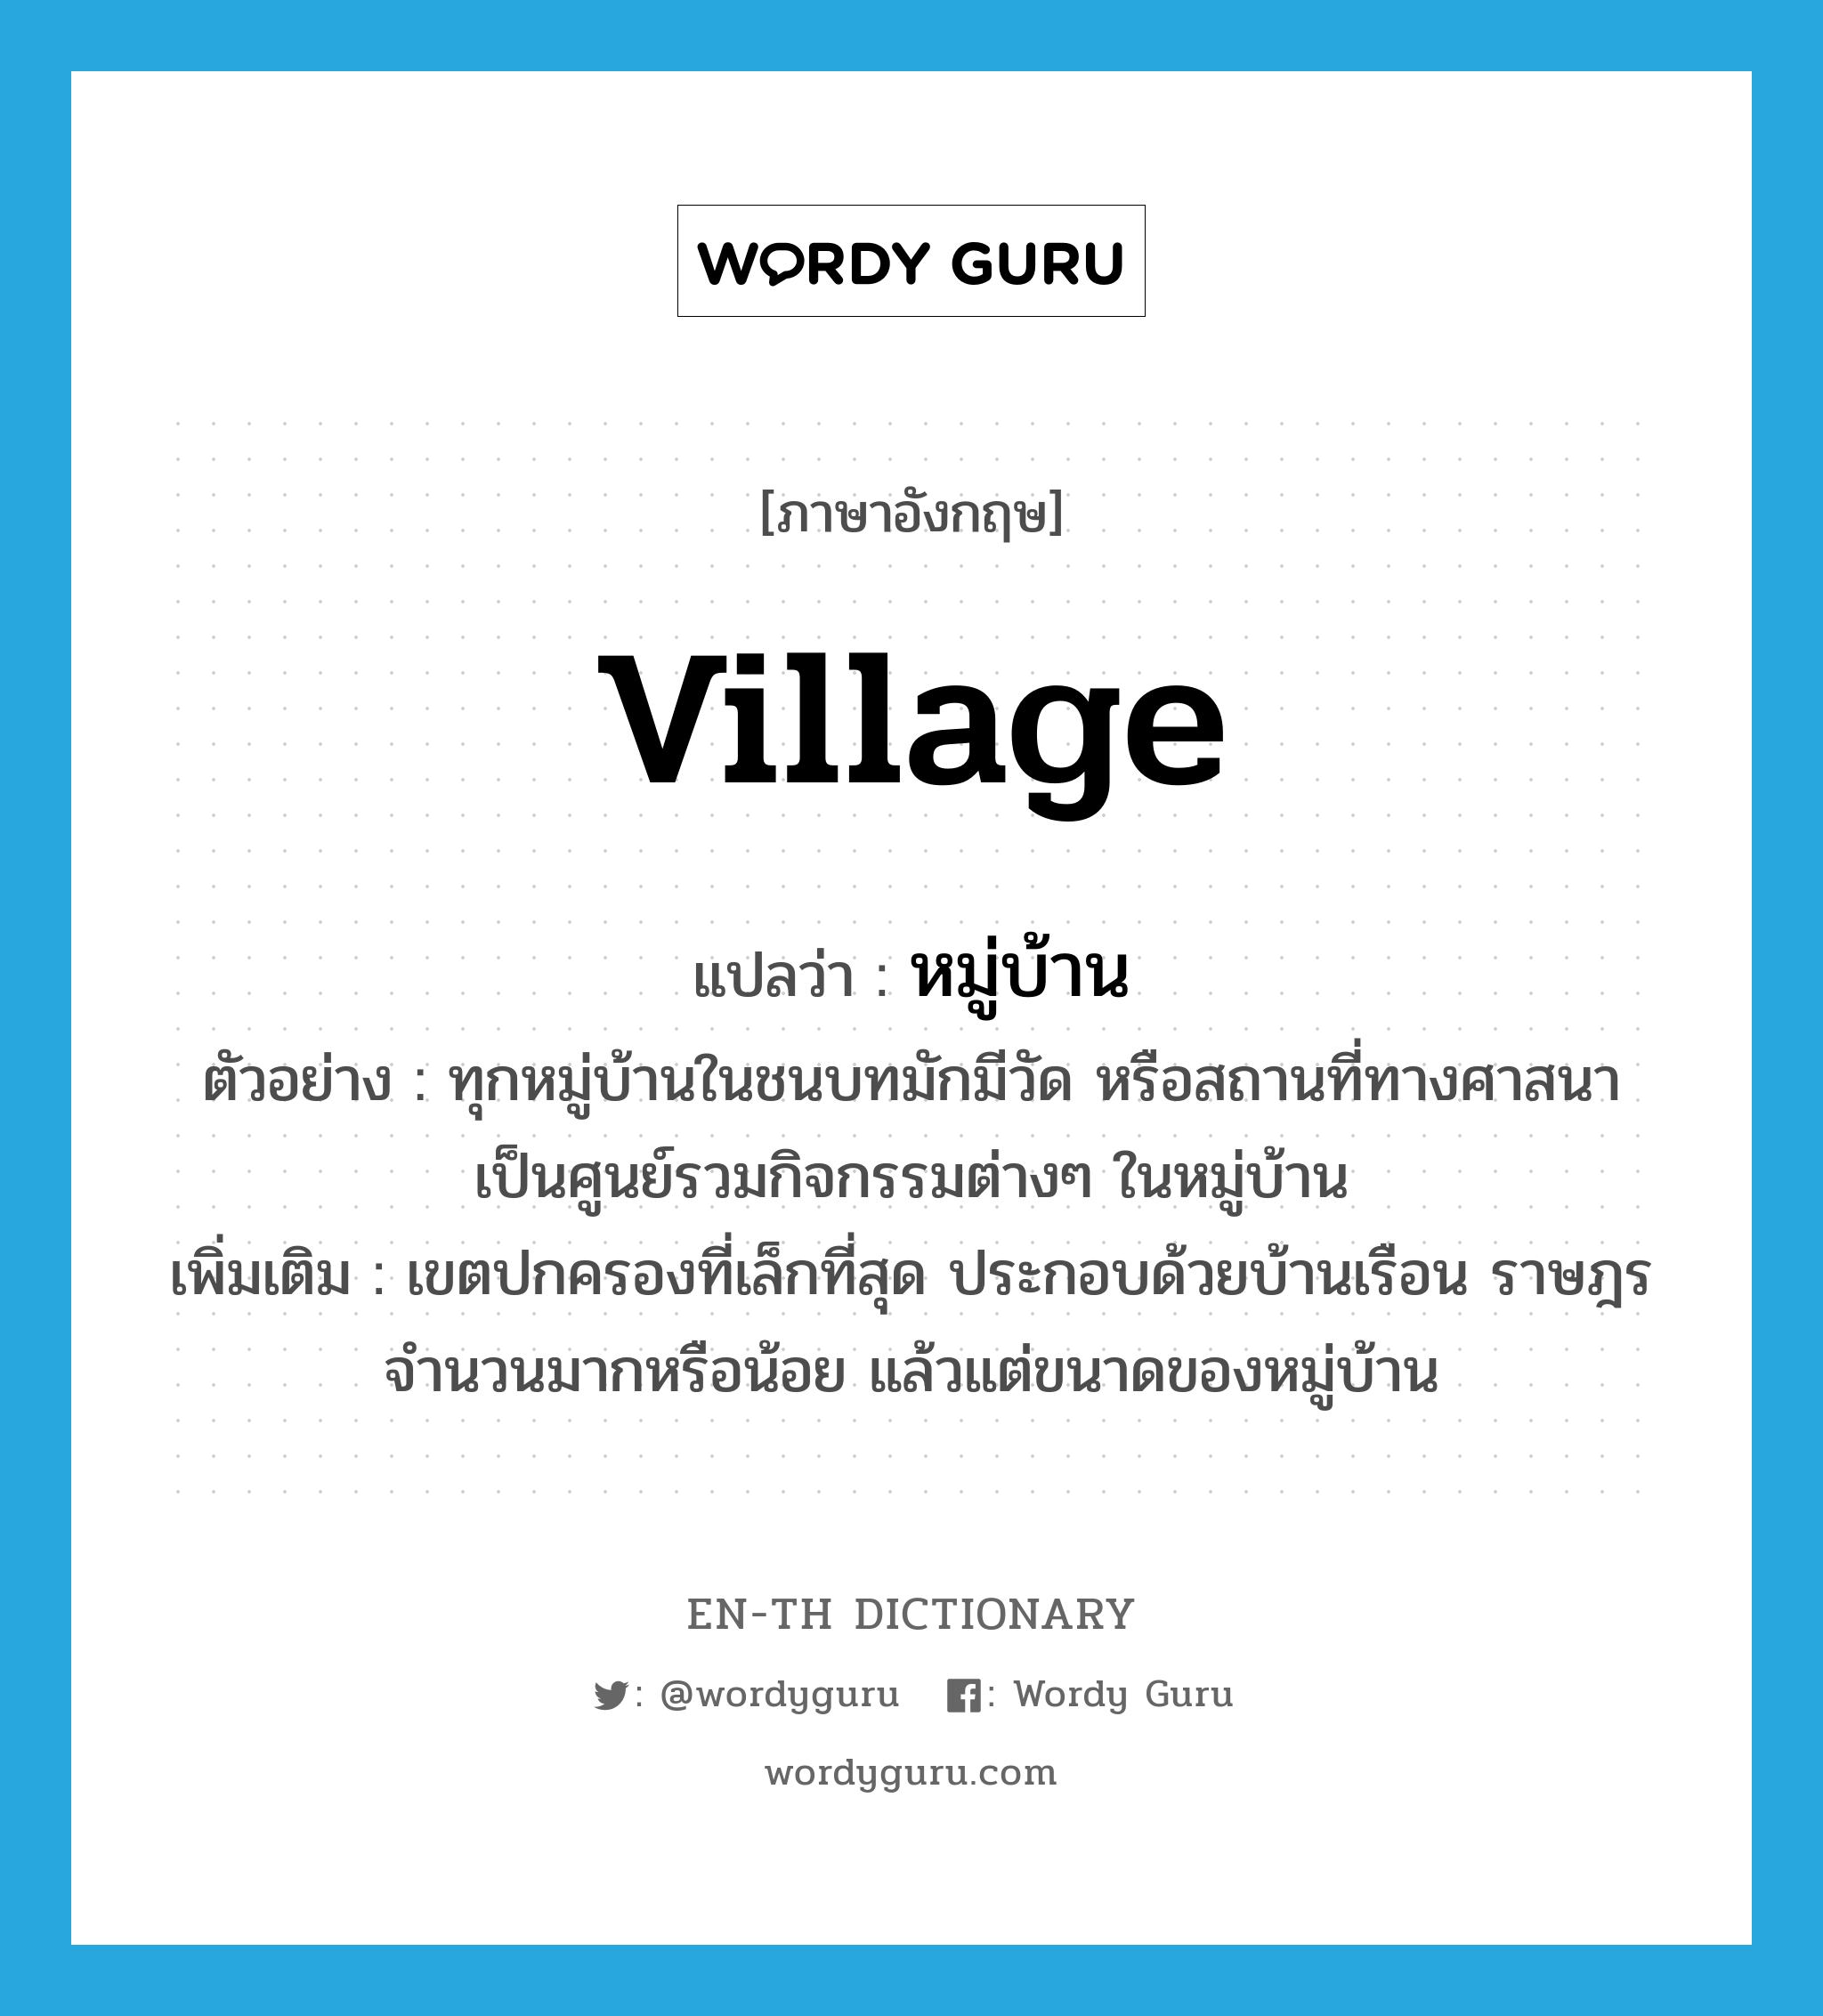 หมู่บ้าน ภาษาอังกฤษ?, คำศัพท์ภาษาอังกฤษ หมู่บ้าน แปลว่า village ประเภท N ตัวอย่าง ทุกหมู่บ้านในชนบทมักมีวัด หรือสถานที่ทางศาสนา เป็นศูนย์รวมกิจกรรมต่างๆ ในหมู่บ้าน เพิ่มเติม เขตปกครองที่เล็กที่สุด ประกอบด้วยบ้านเรือน ราษฎรจำนวนมากหรือน้อย แล้วแต่ขนาดของหมู่บ้าน หมวด N